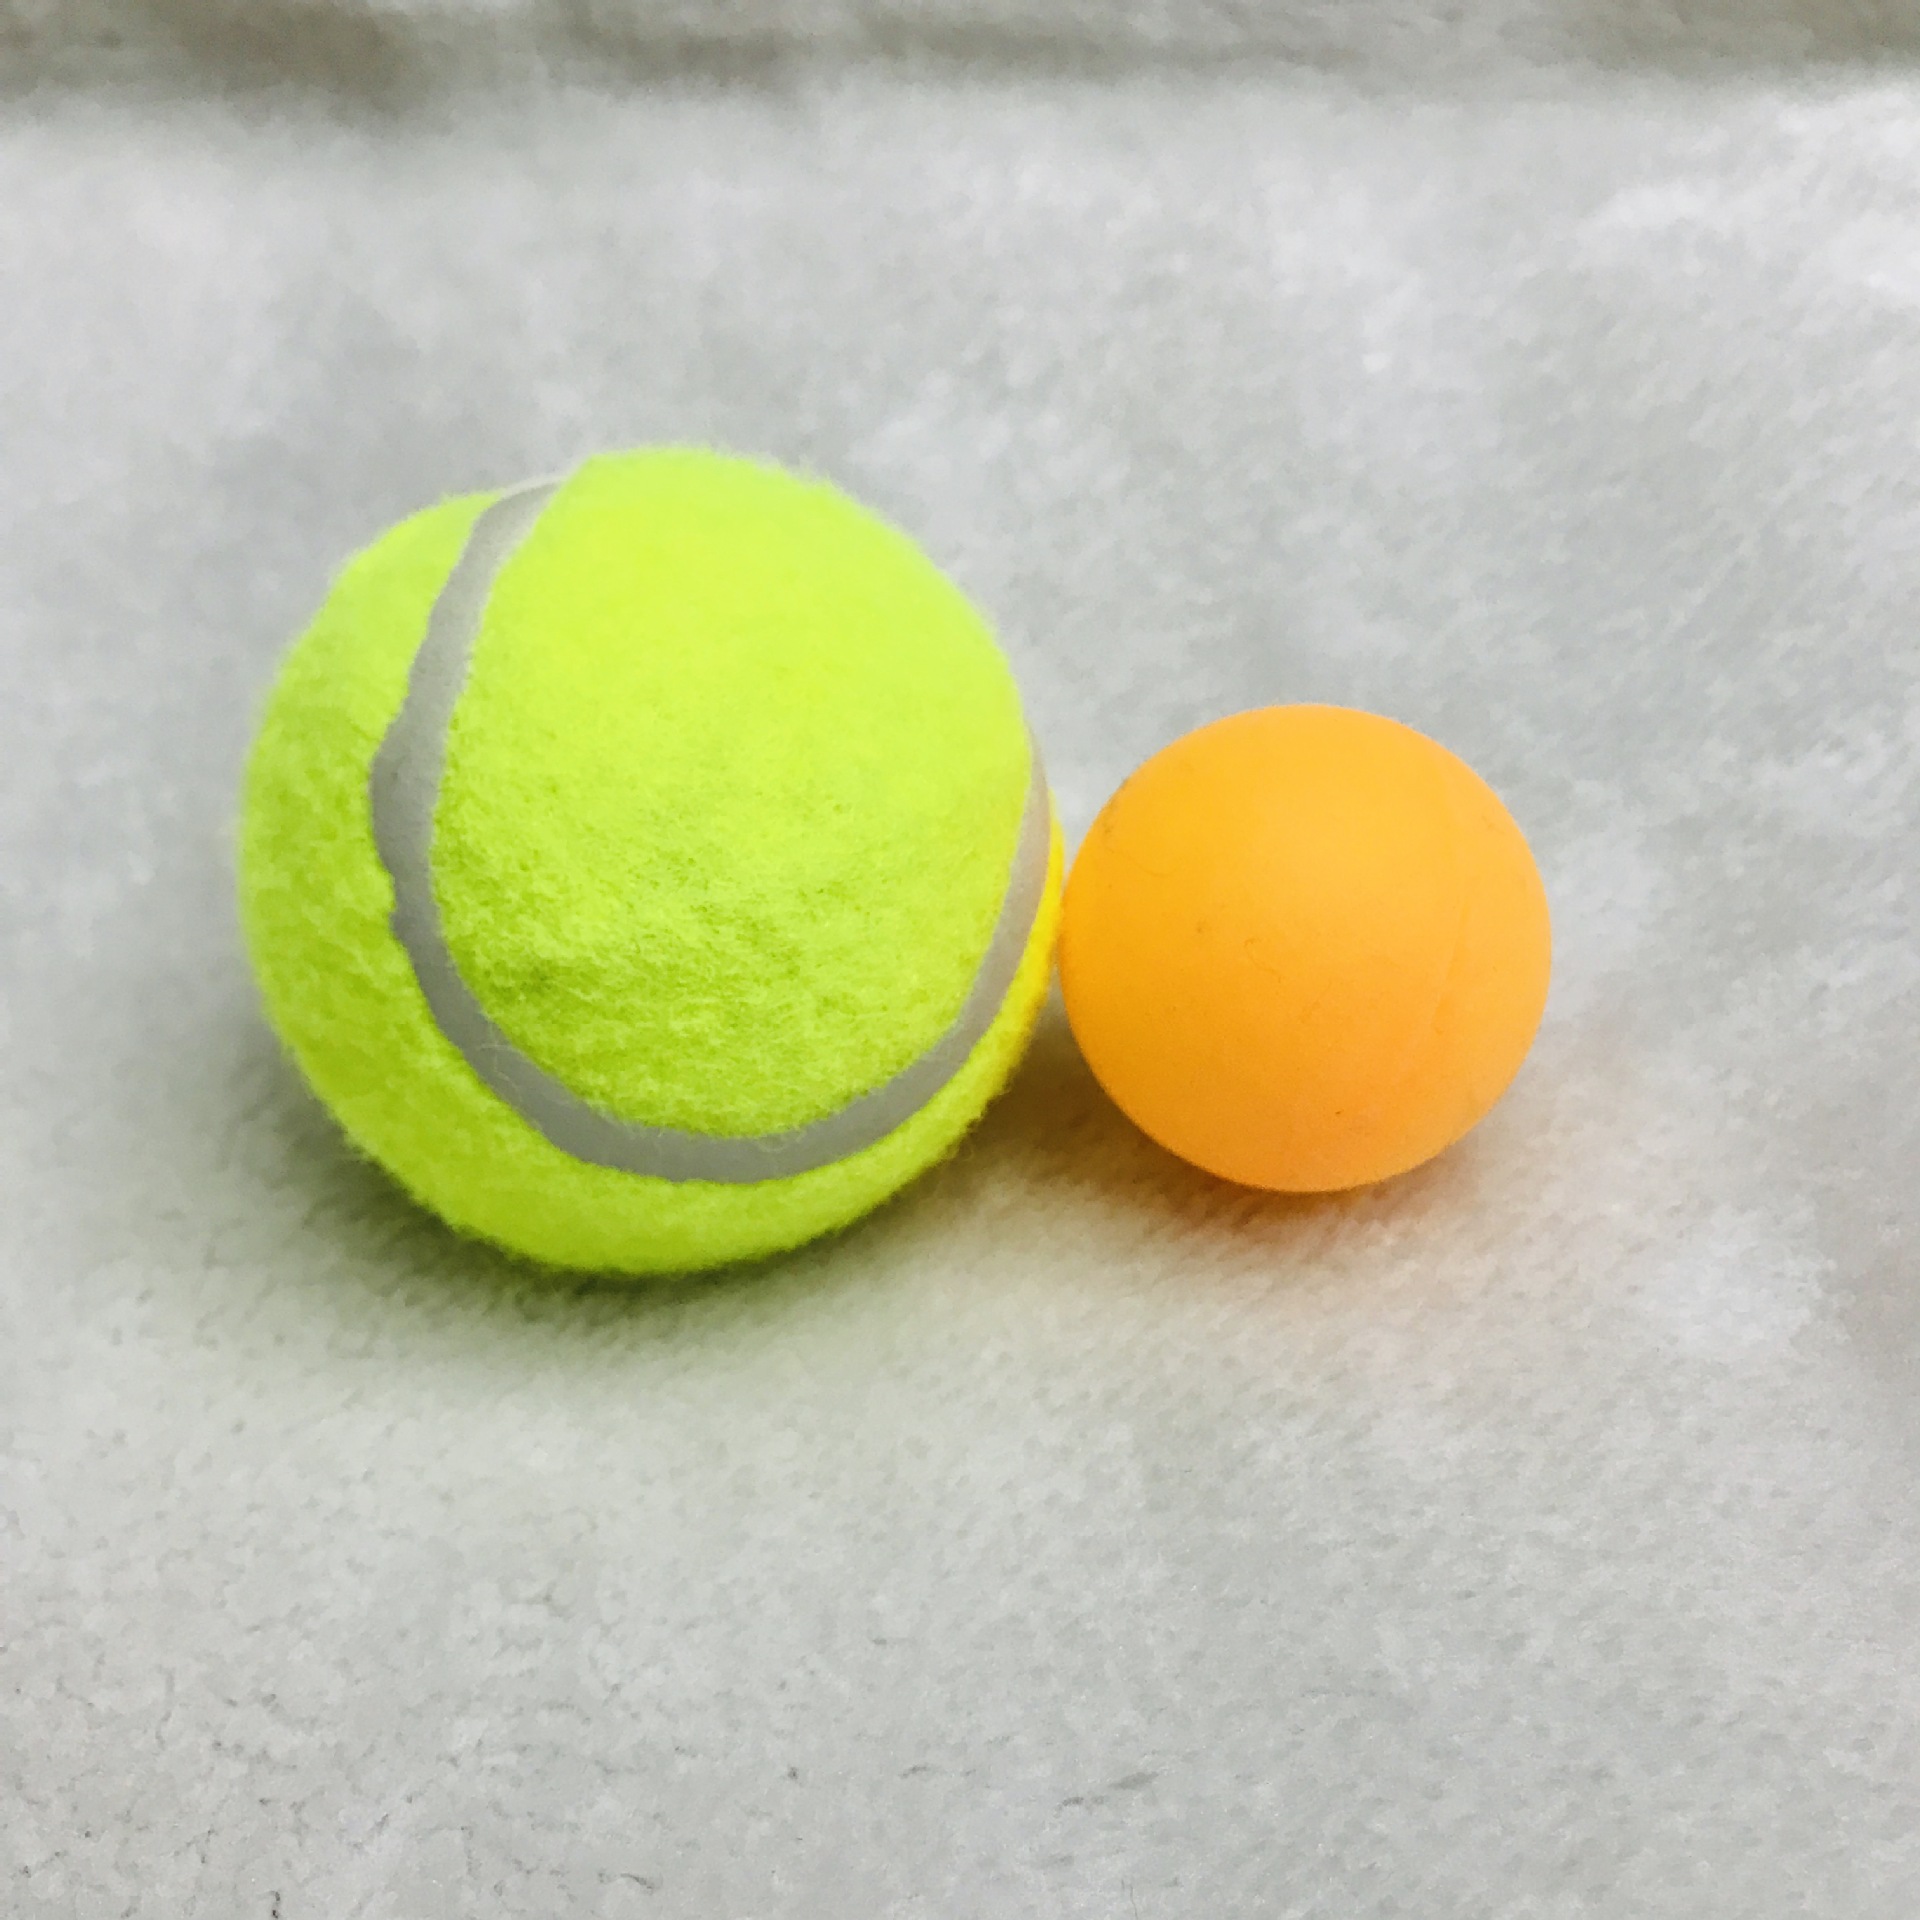 厂家直销 实心网球 1.3-1.4米高弹性耐打 特级无标 LOGO定制产品图